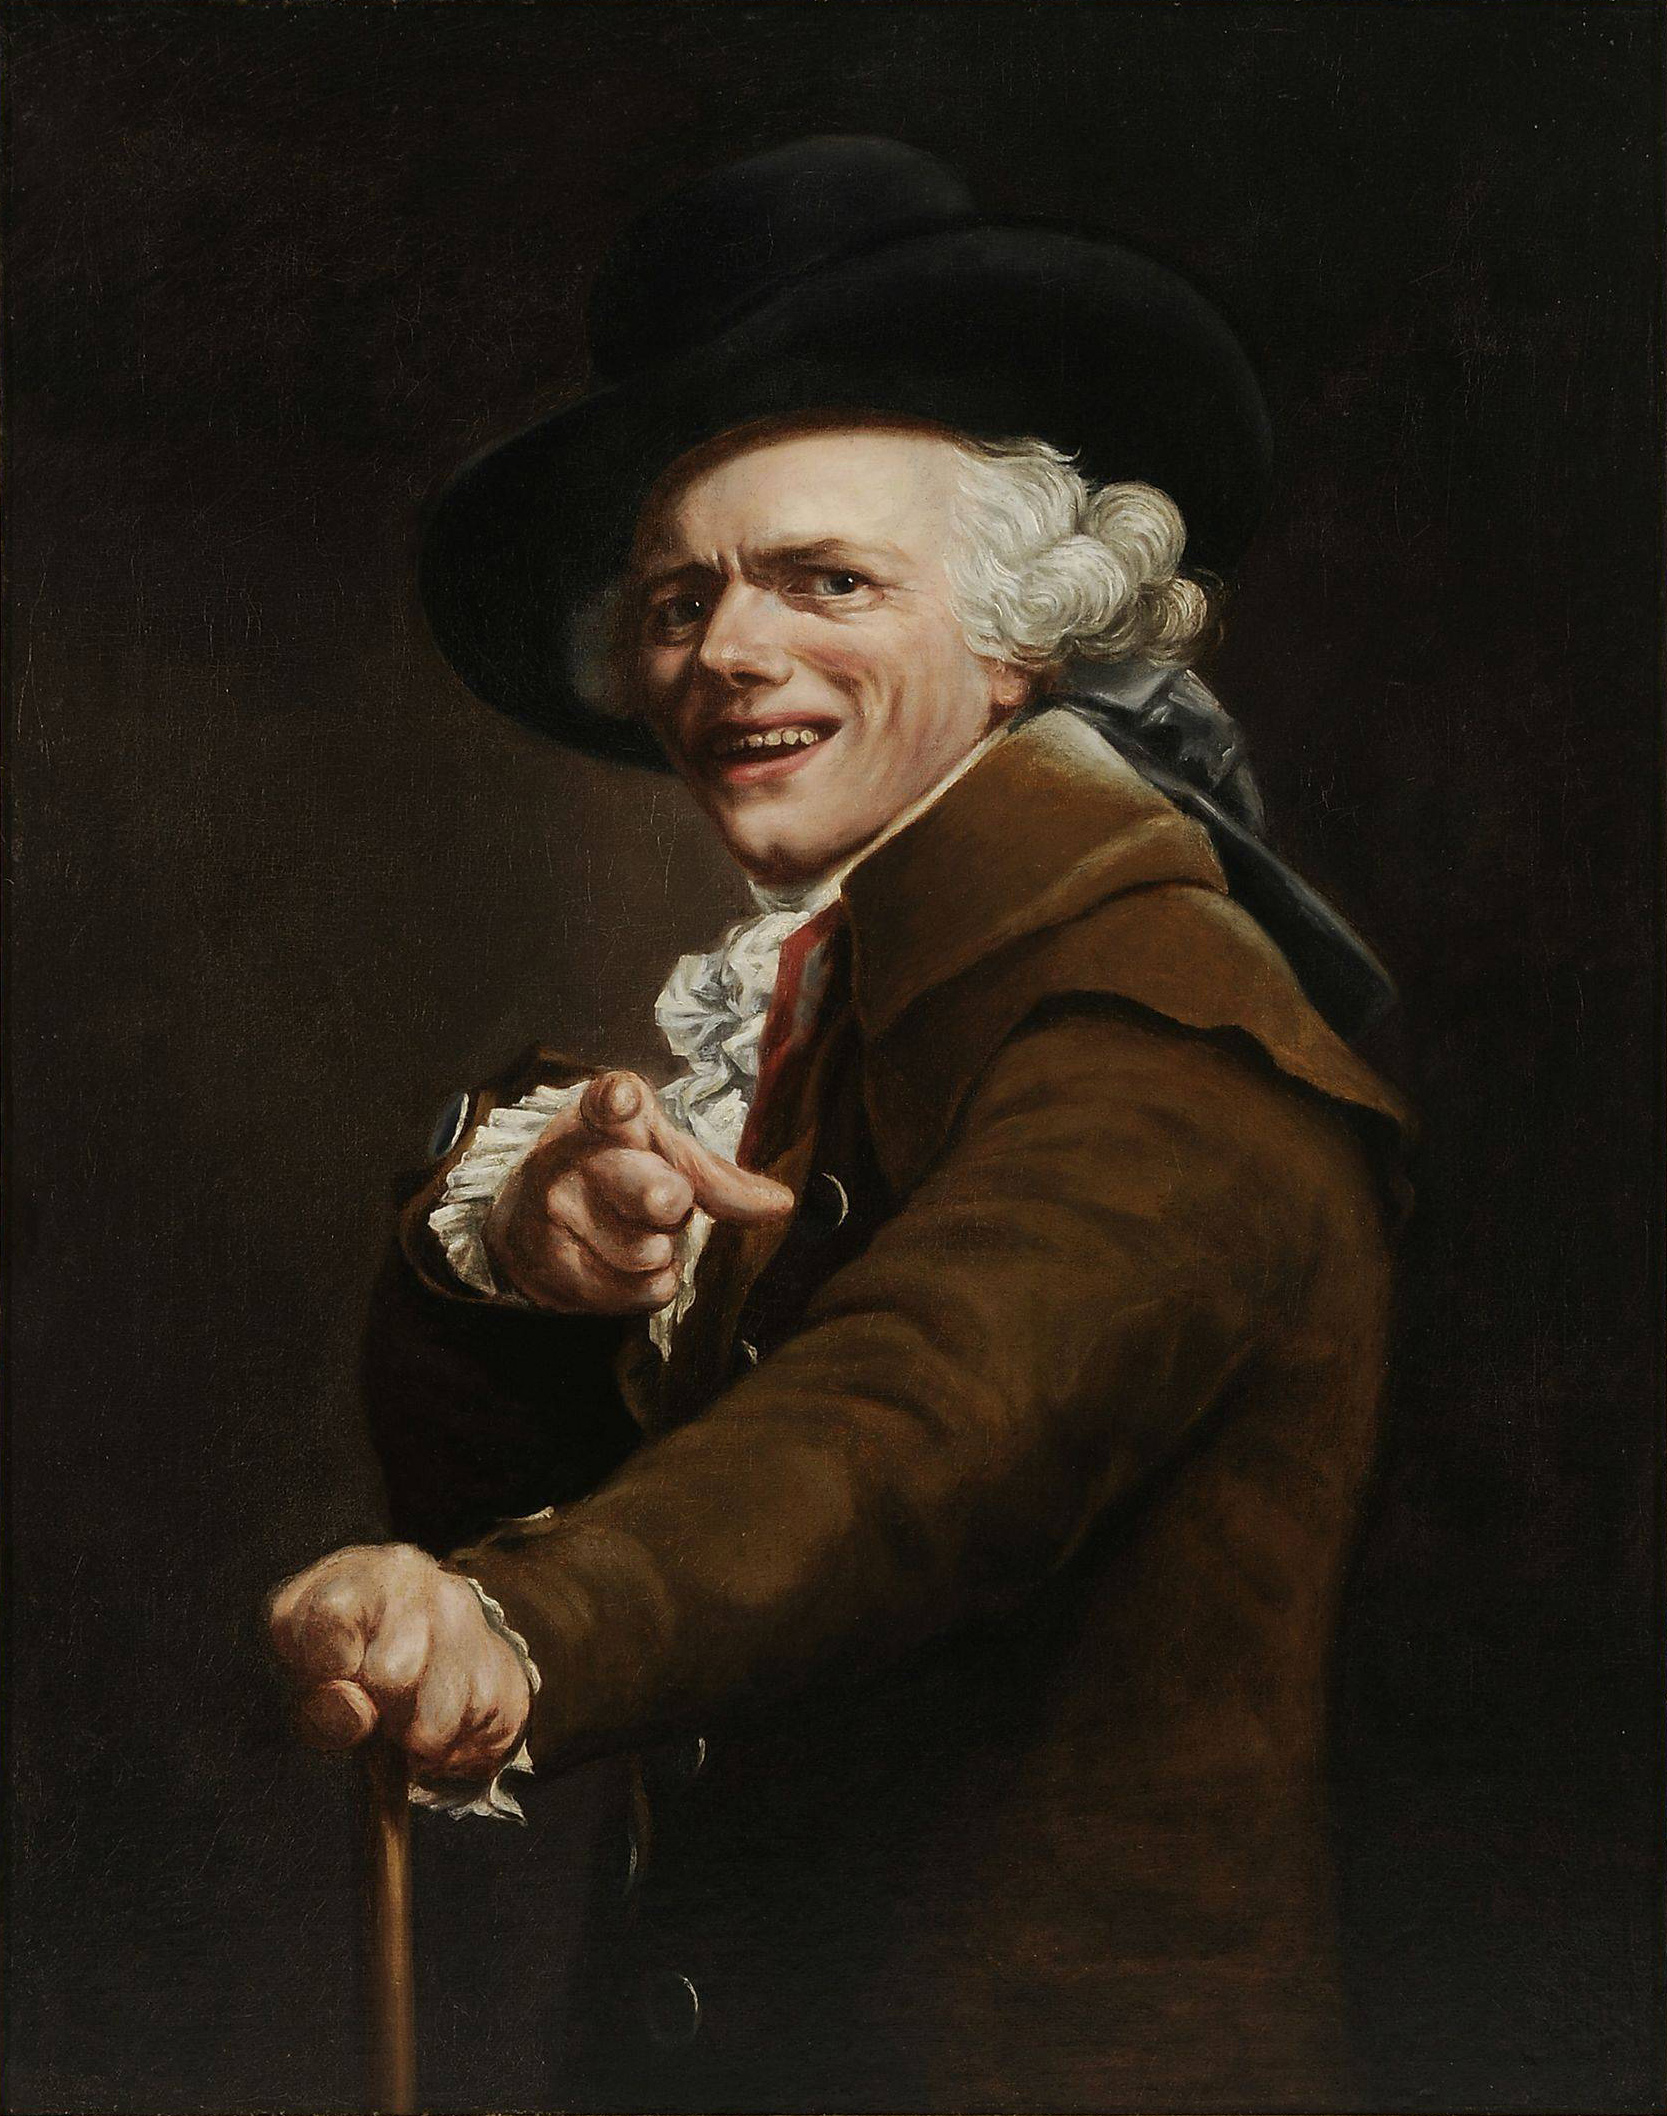 Autoportret artysty w stroju błazna by Joseph Ducreux - 1791 - 91 × 72 cm 